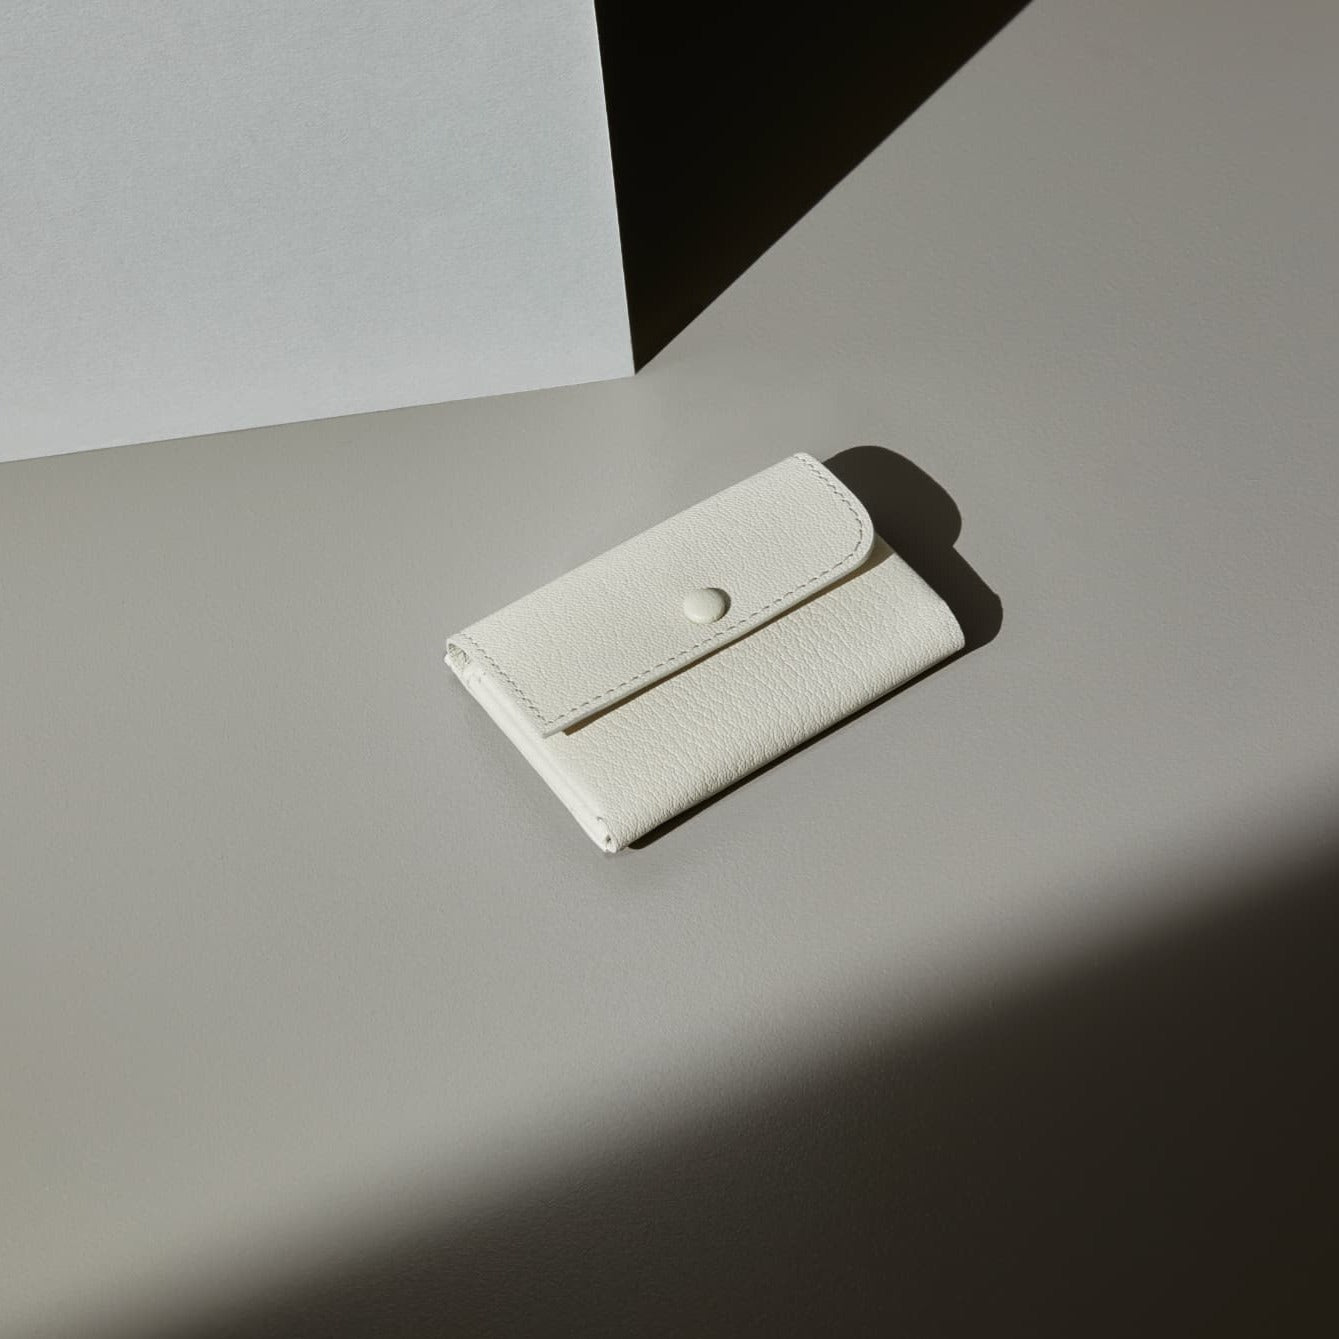 Mini Wallet - Off-white